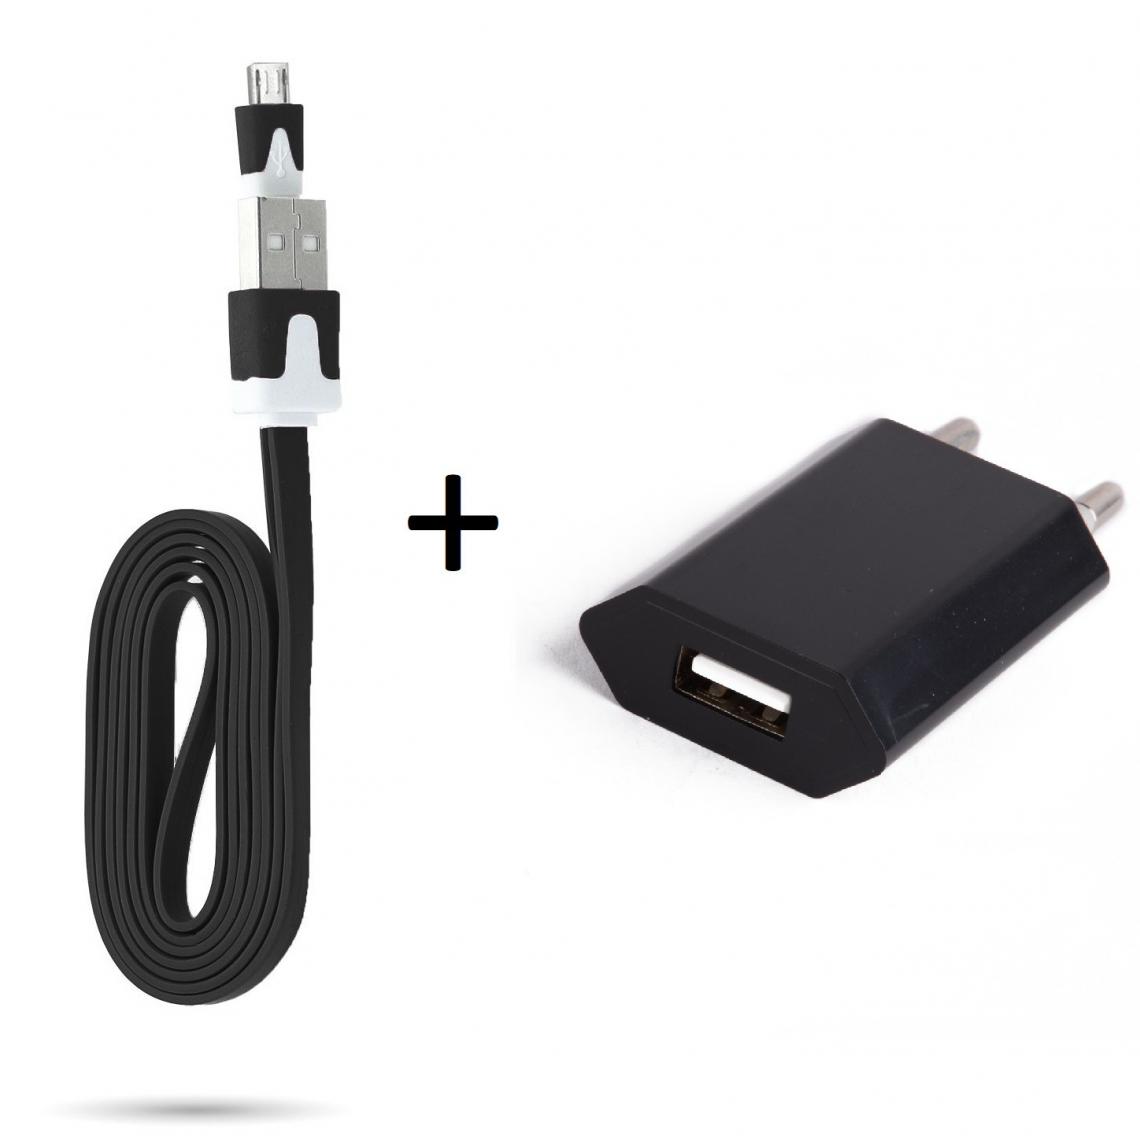 Shot - Cable Noodle 1m Chargeur + Prise Secteur pour XIAOMI Redmi Note 6 Smartphone Micro USB Murale Pack Android (NOIR) - Chargeur secteur téléphone